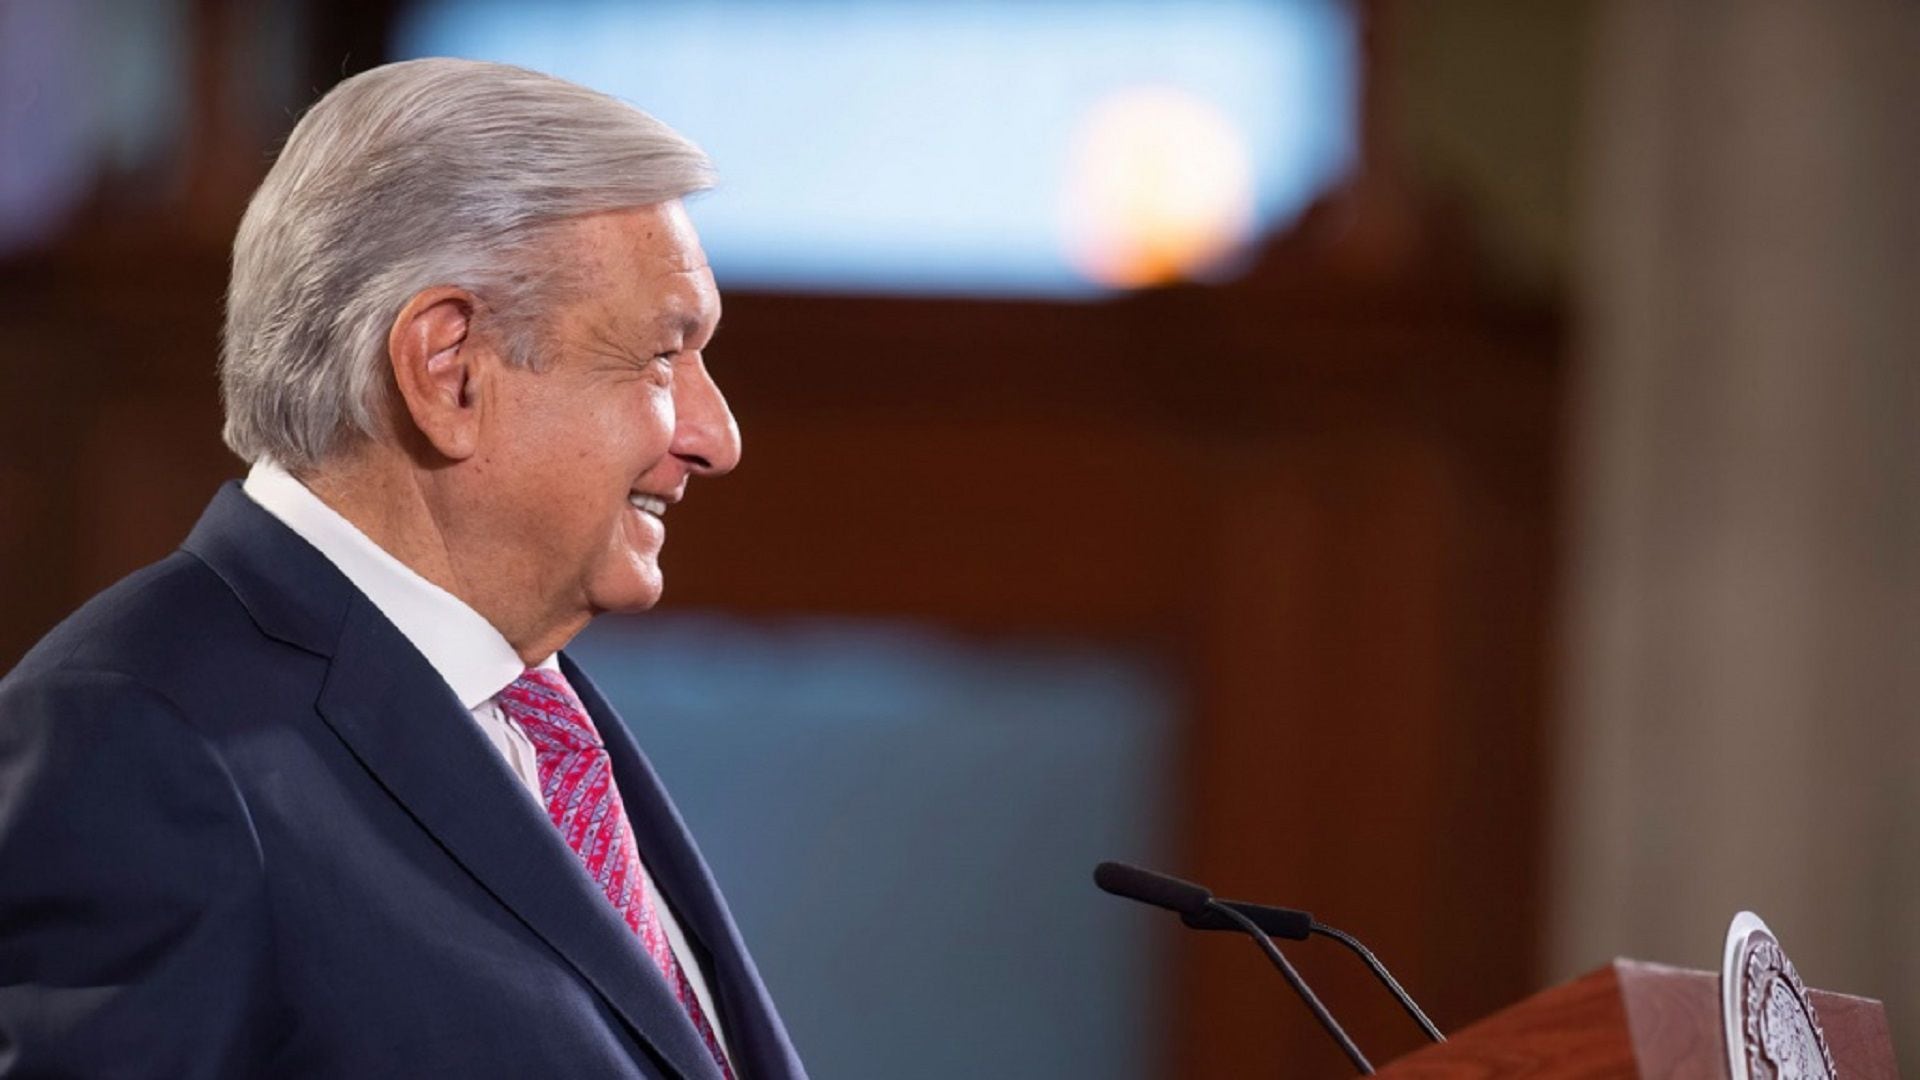 El presidente López Obrador ha tenido algunos desencuentros con la SCJN. (Presidencia)